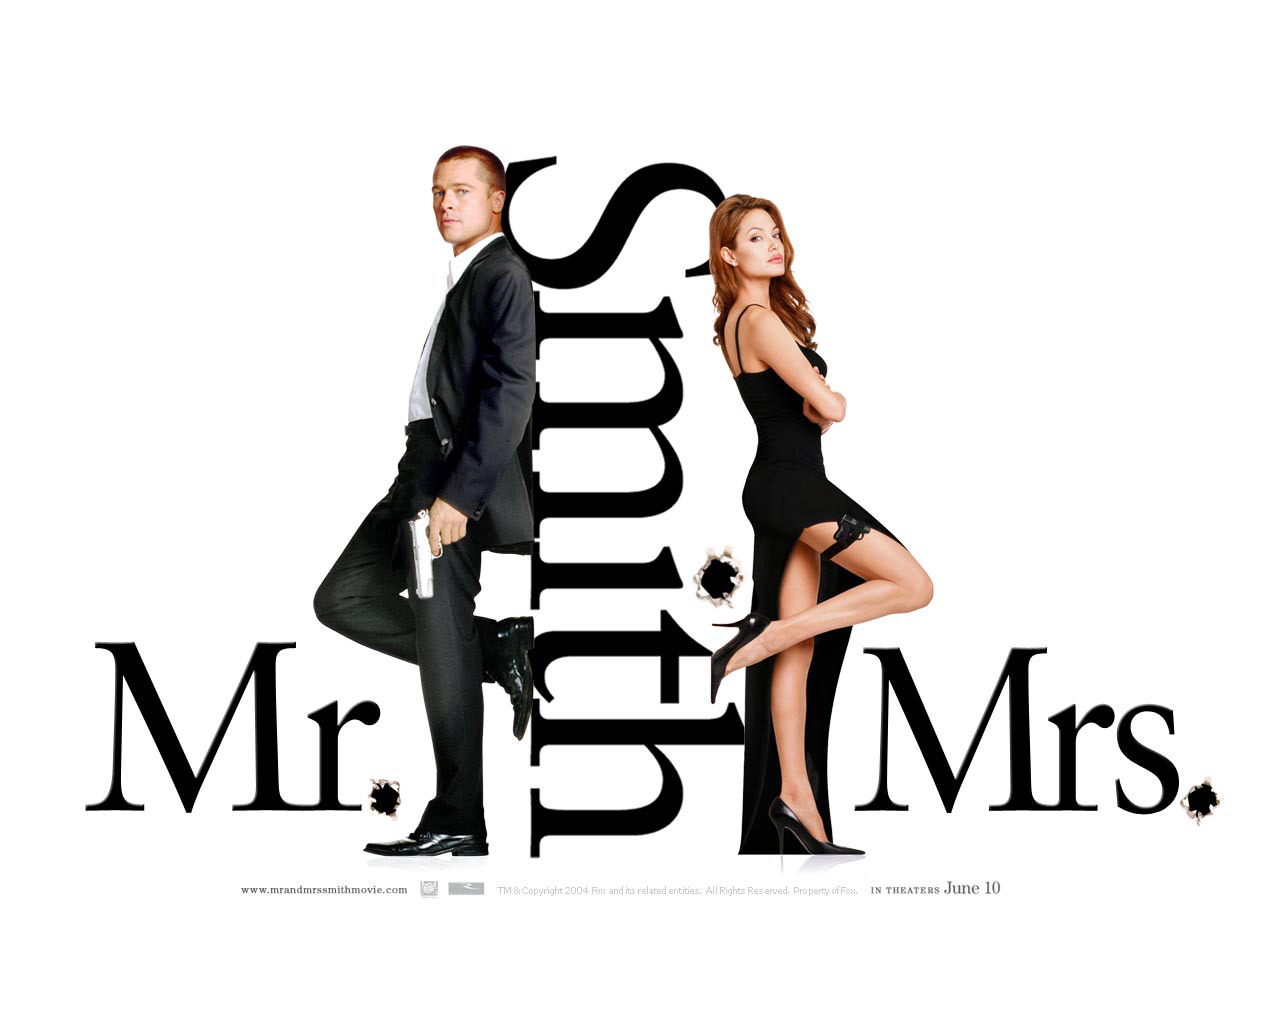 Мистер и миссис Смит (Mr. & Mrs. Smith). 